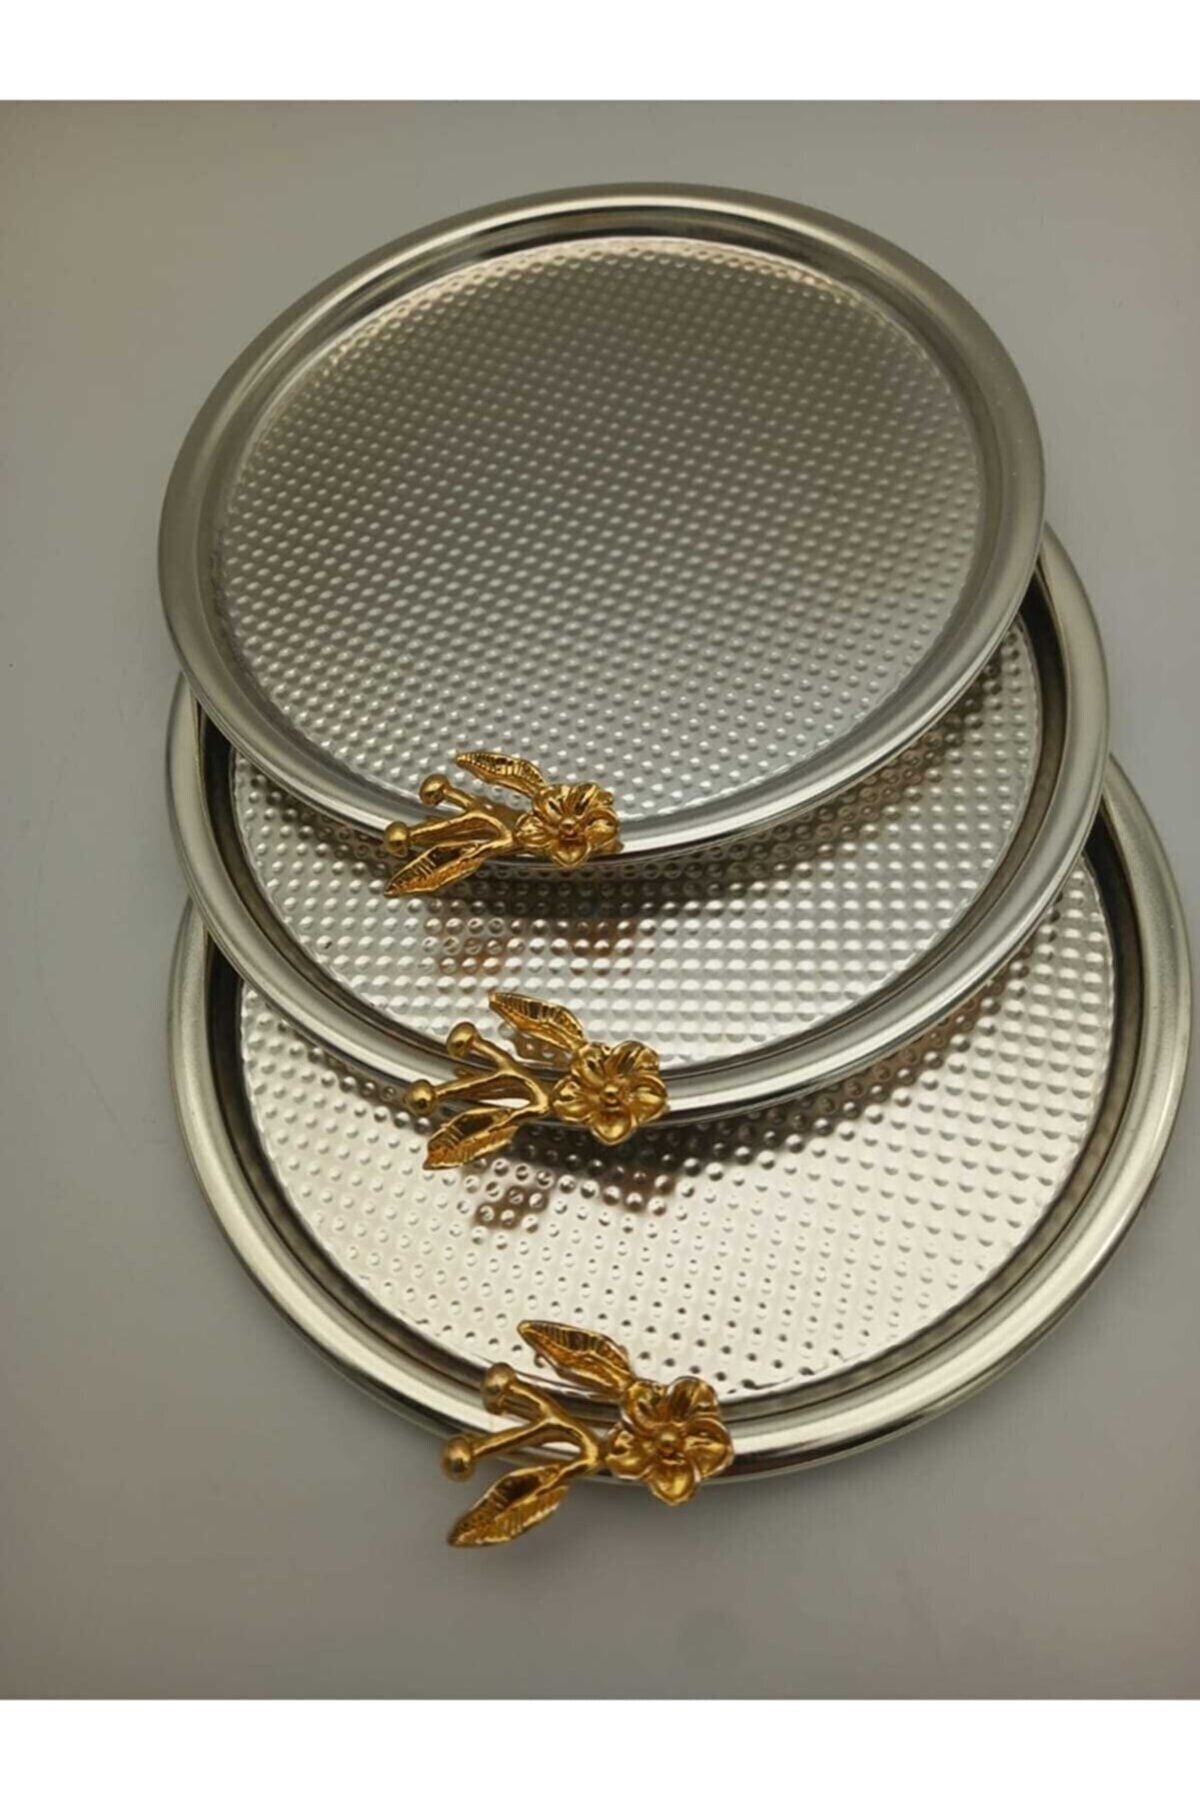 Fiyakalı Ürünler Atölyesi 3'lü Japon Güllü Yuvarlak Gümüş Çay Ve Kahve Sunum Tepsisi, Dekoratif Servis Tepsisi 22cm